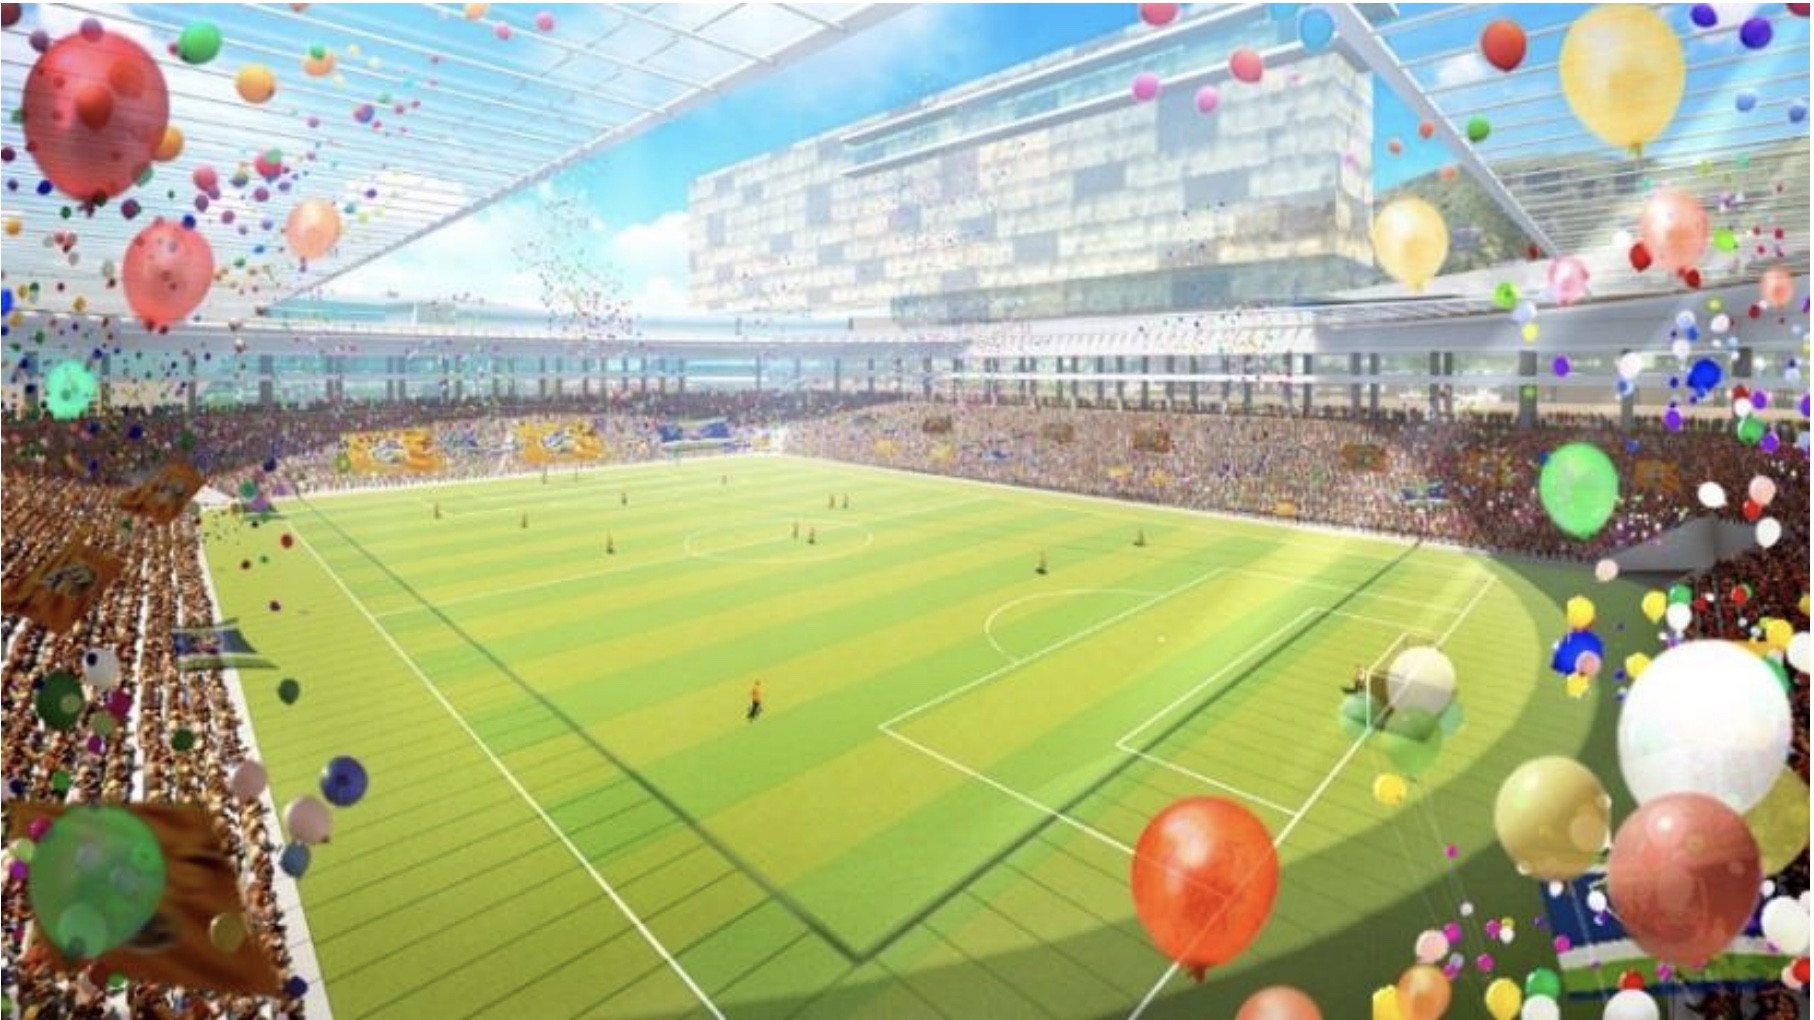 23年開業予定 ジャパネットhdの長崎スタジアムシティプロジェクト Re Urbanization 再都市化